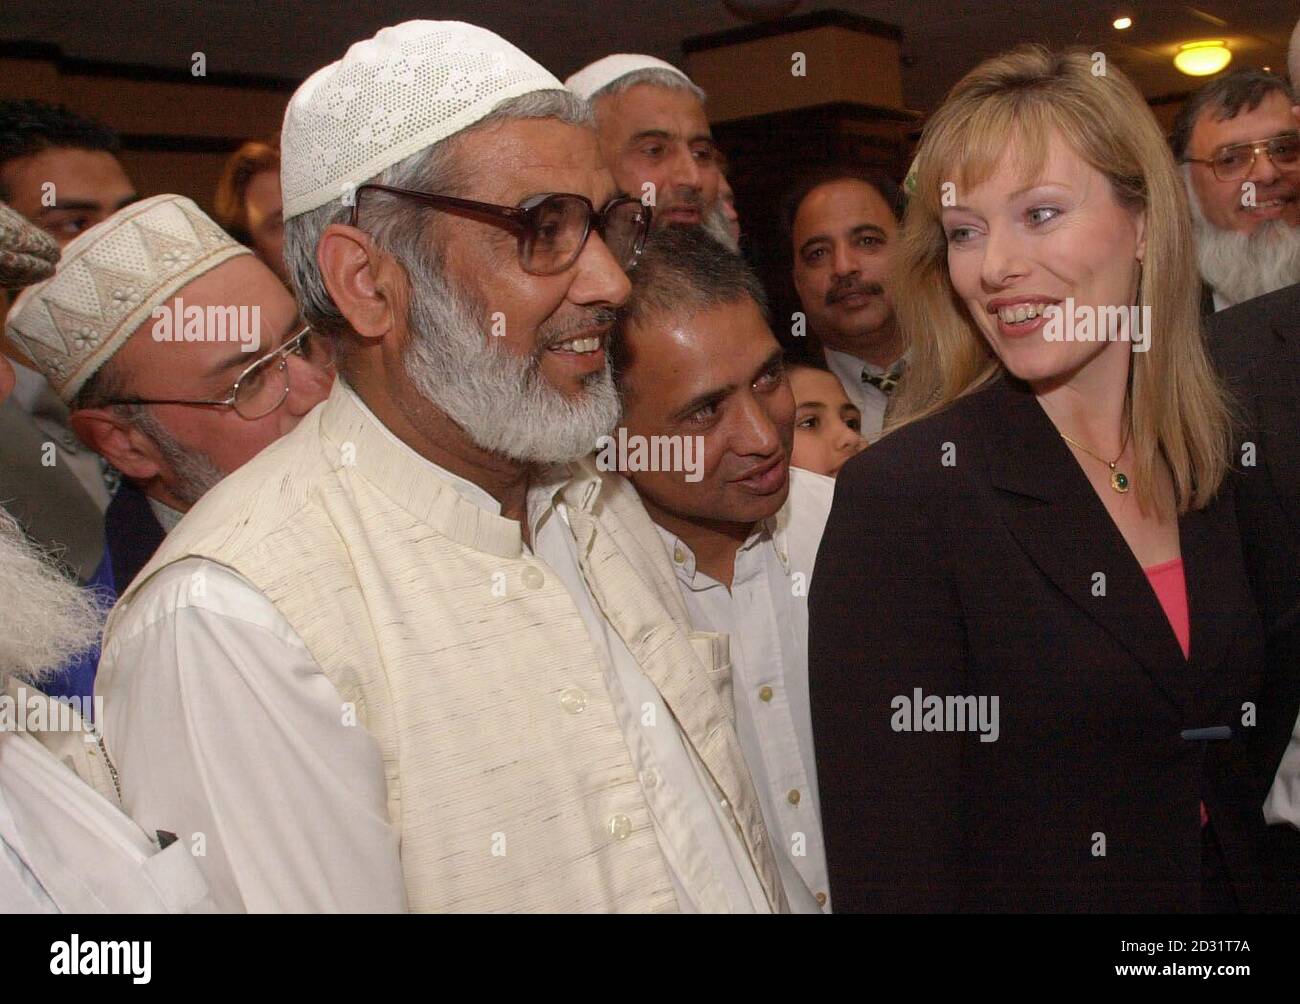 Ffion Hague trifft in Bradford die Führer der muslimischen Gemeinschaft, wo ihr Ehemann William Hague, der Vorsitzende der konservativen Oppositionspartei, früher am Tag eine Rede über die Rasse hielt. Stockfoto